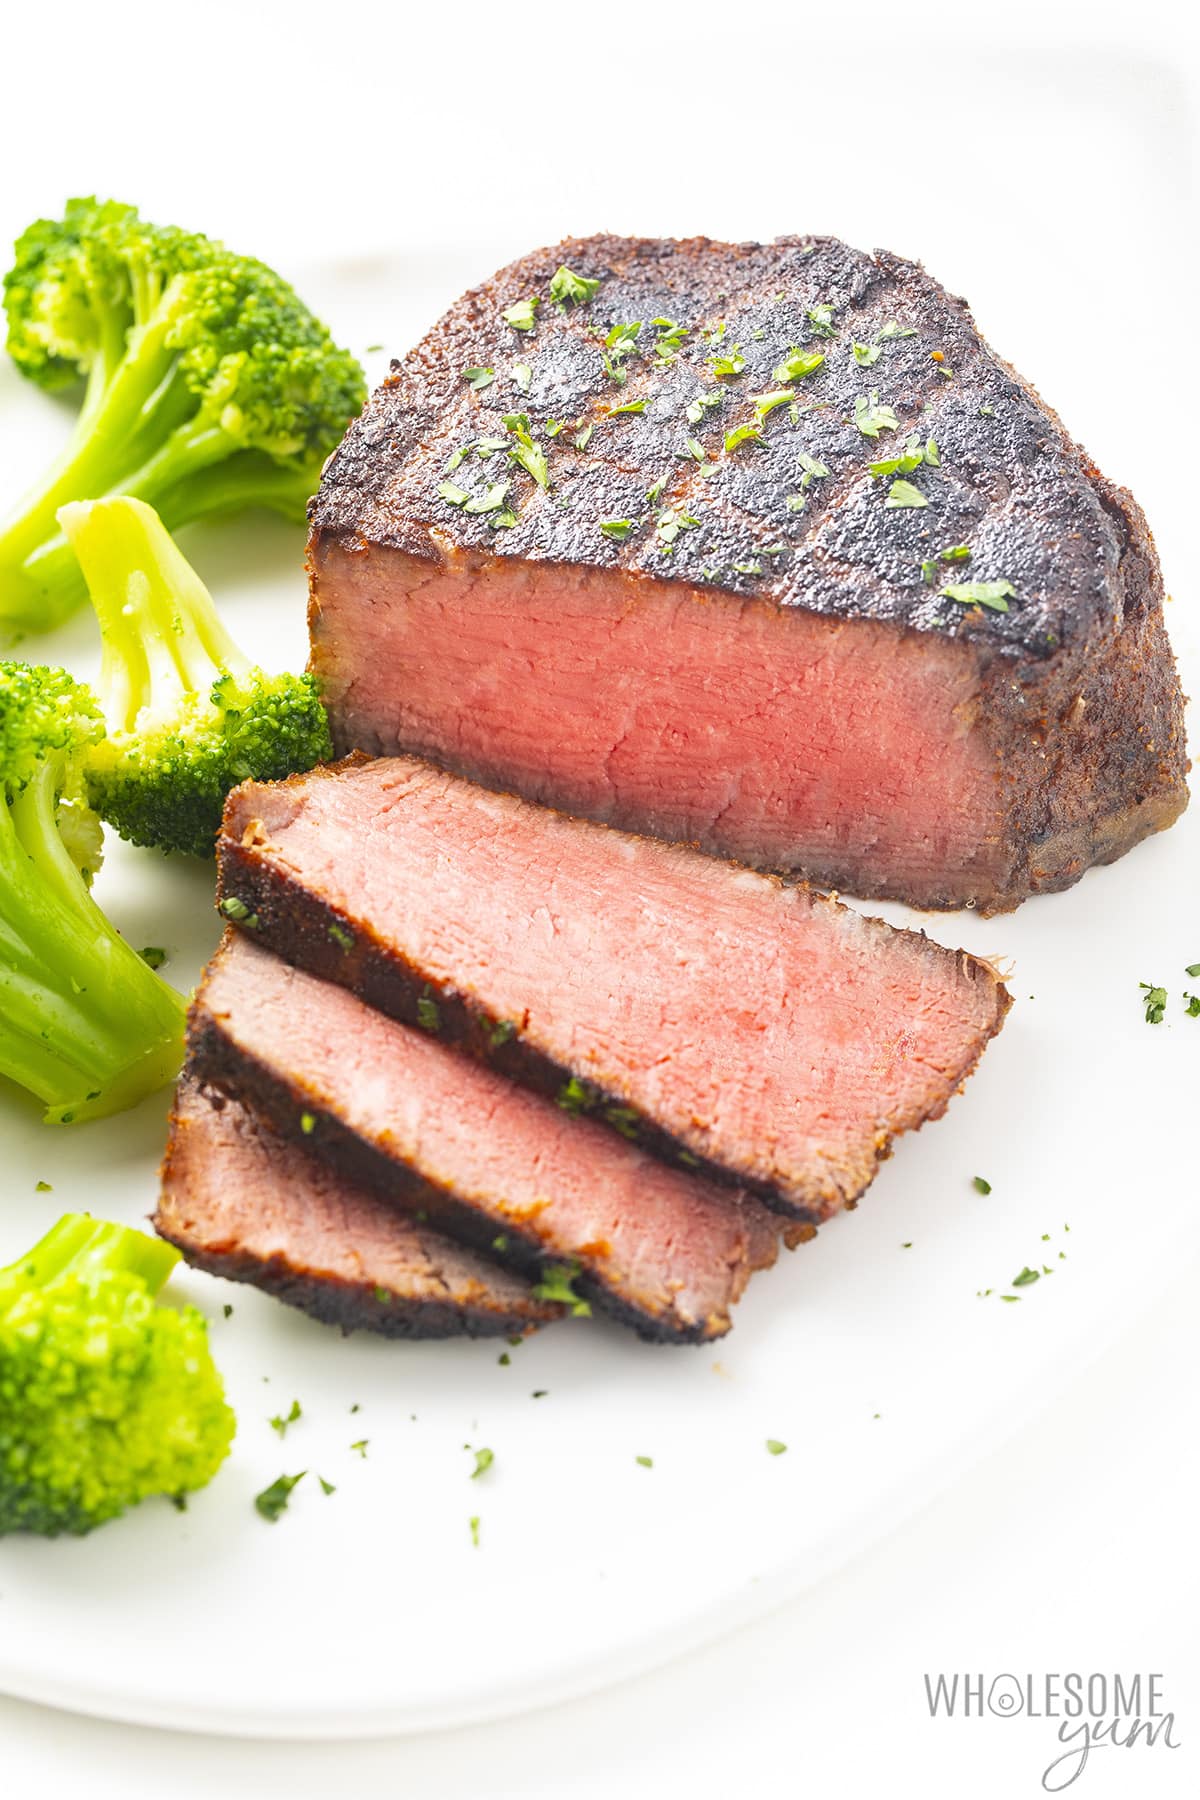 Reverse seared steak on a plate.